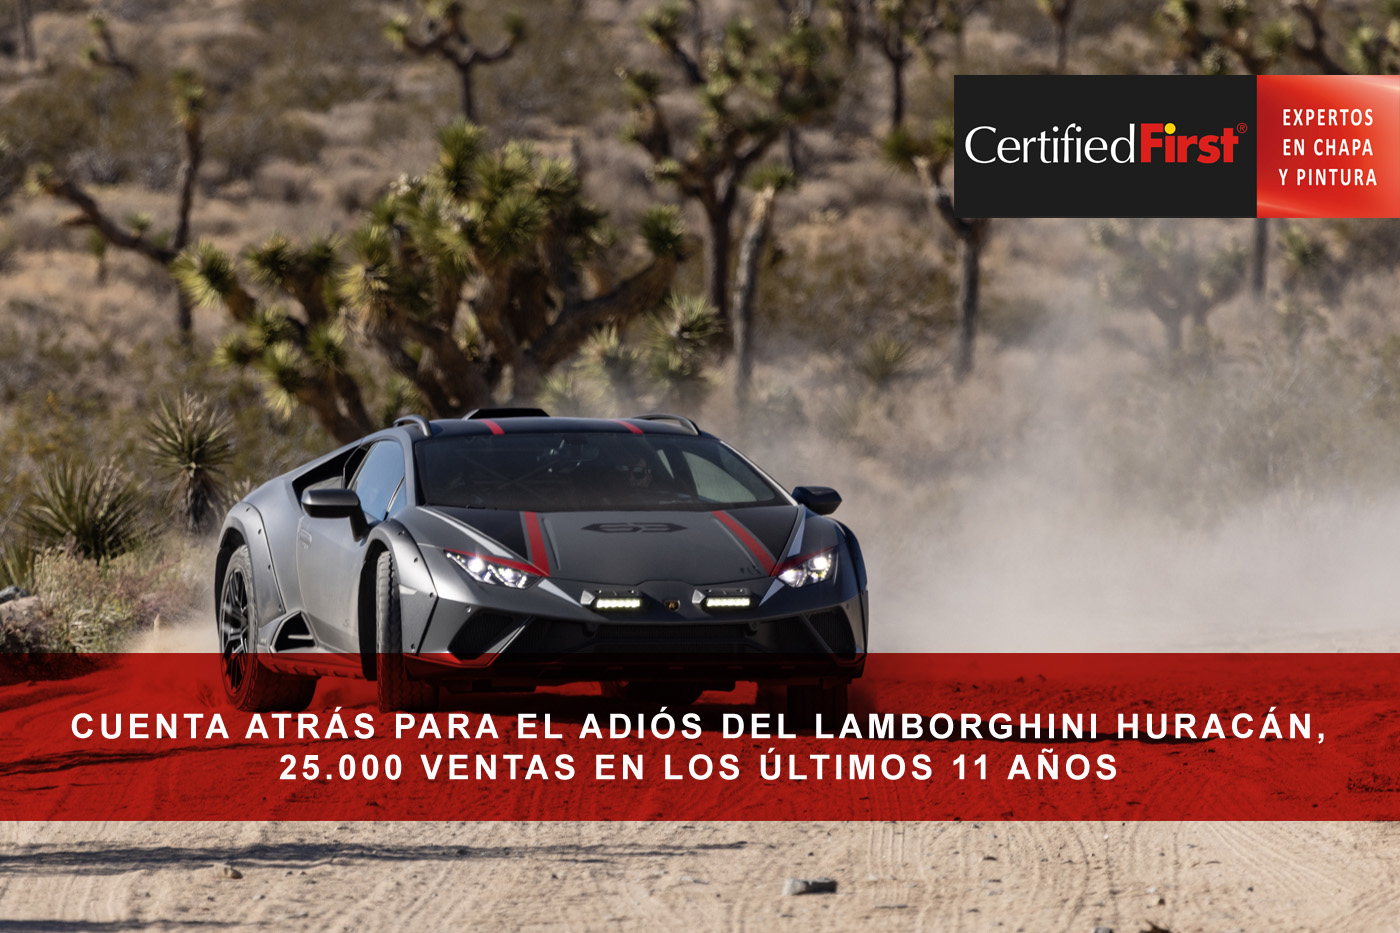 Cuenta atrás para el adiós del Lamborghini Huracán, 25.000 ventas en los últimos 11 años